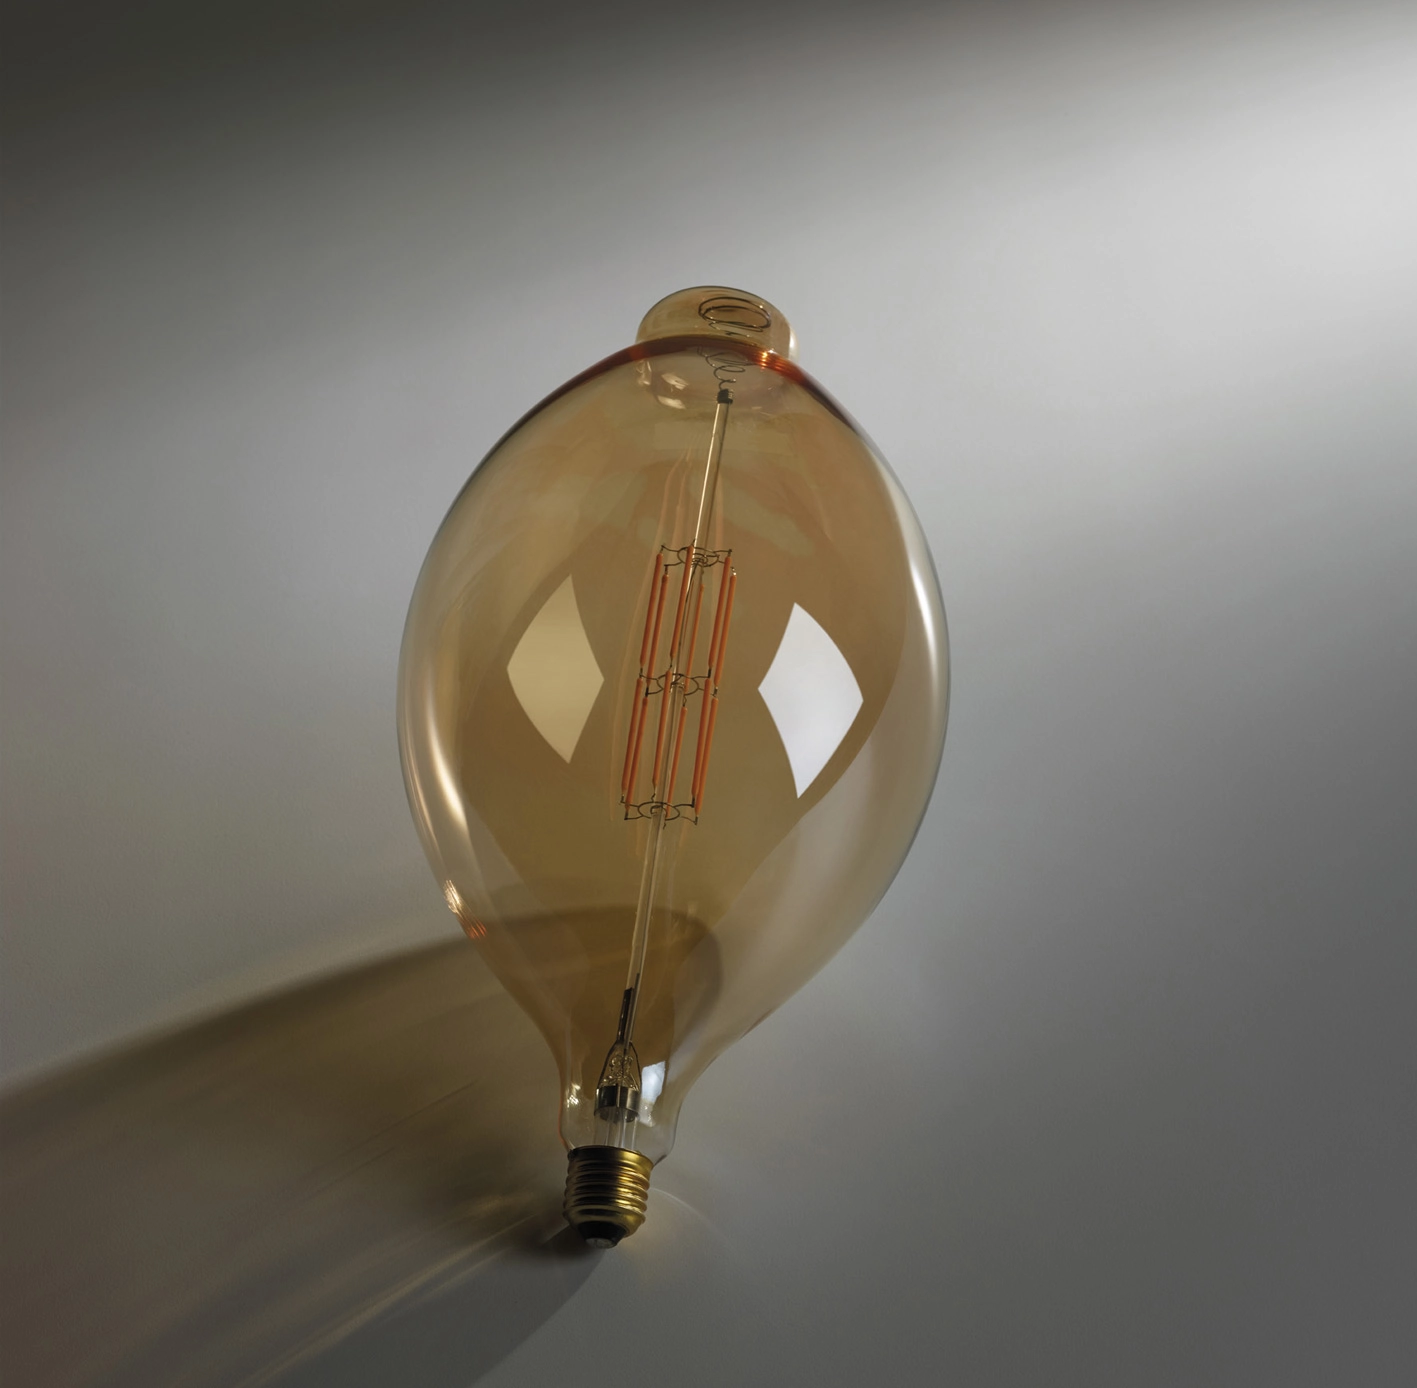 UNIDEA E27 LED Vintage Filament Lampe von Egoluce